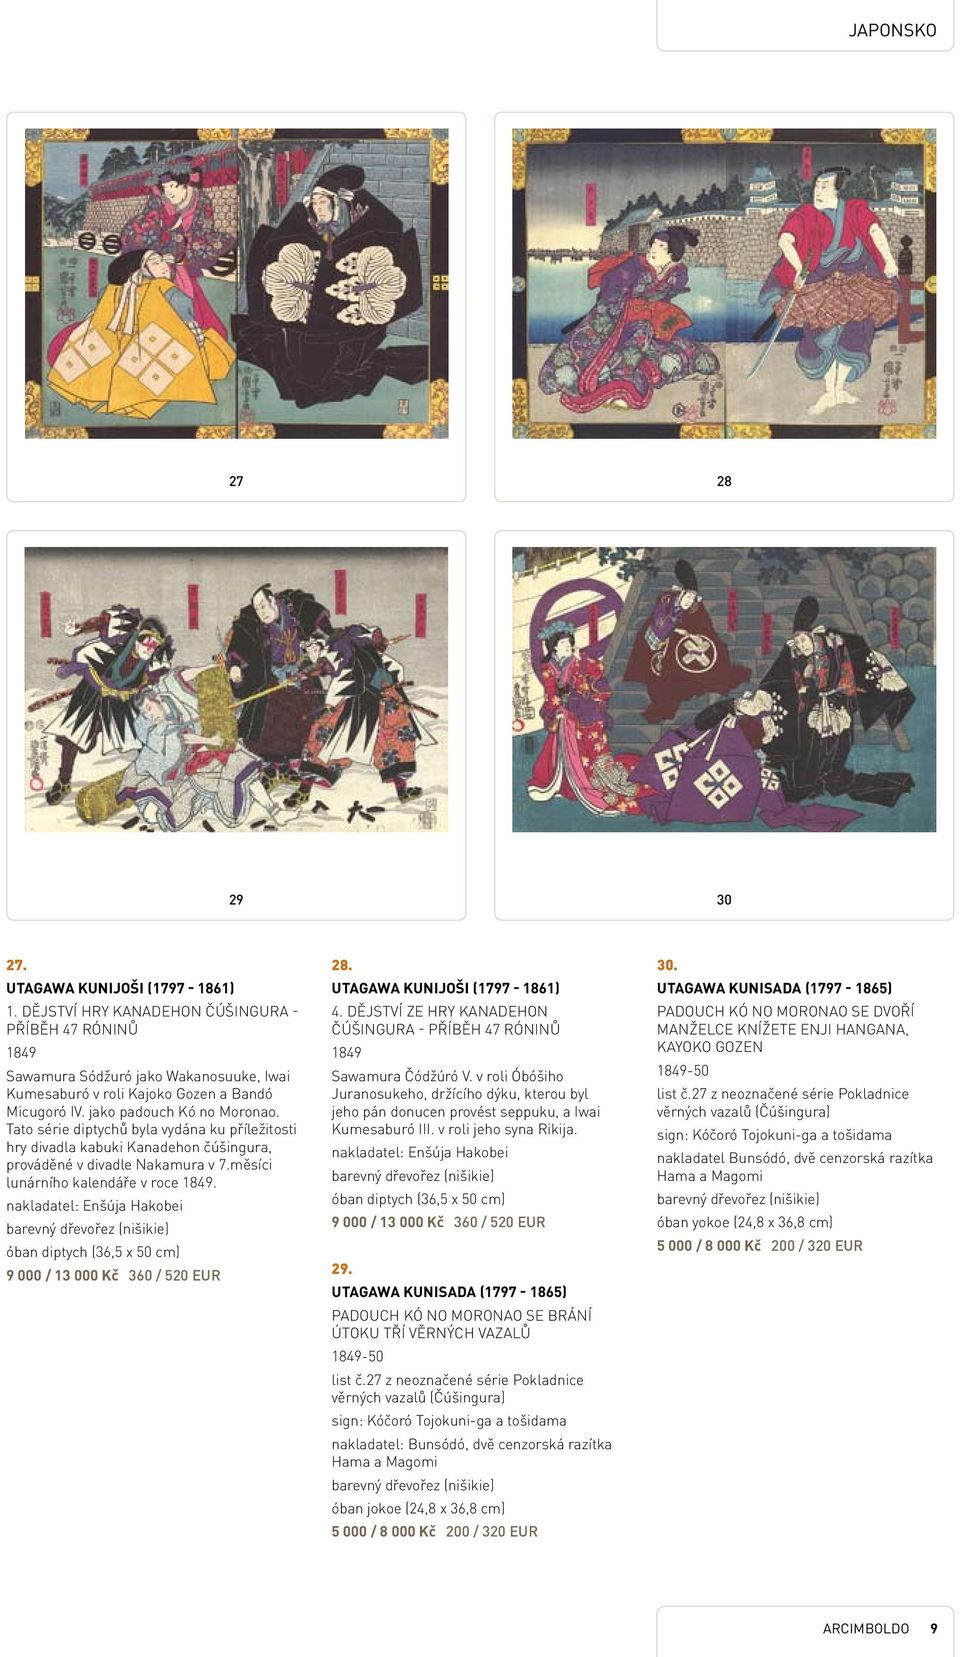 Tato série diptychů byla vydána ku příležitosti hry divadla kabuki Kanadehon čúšingura, prováděné v divadle Nakamura v 7.měsíci lunárního kalendáře v roce 1849.